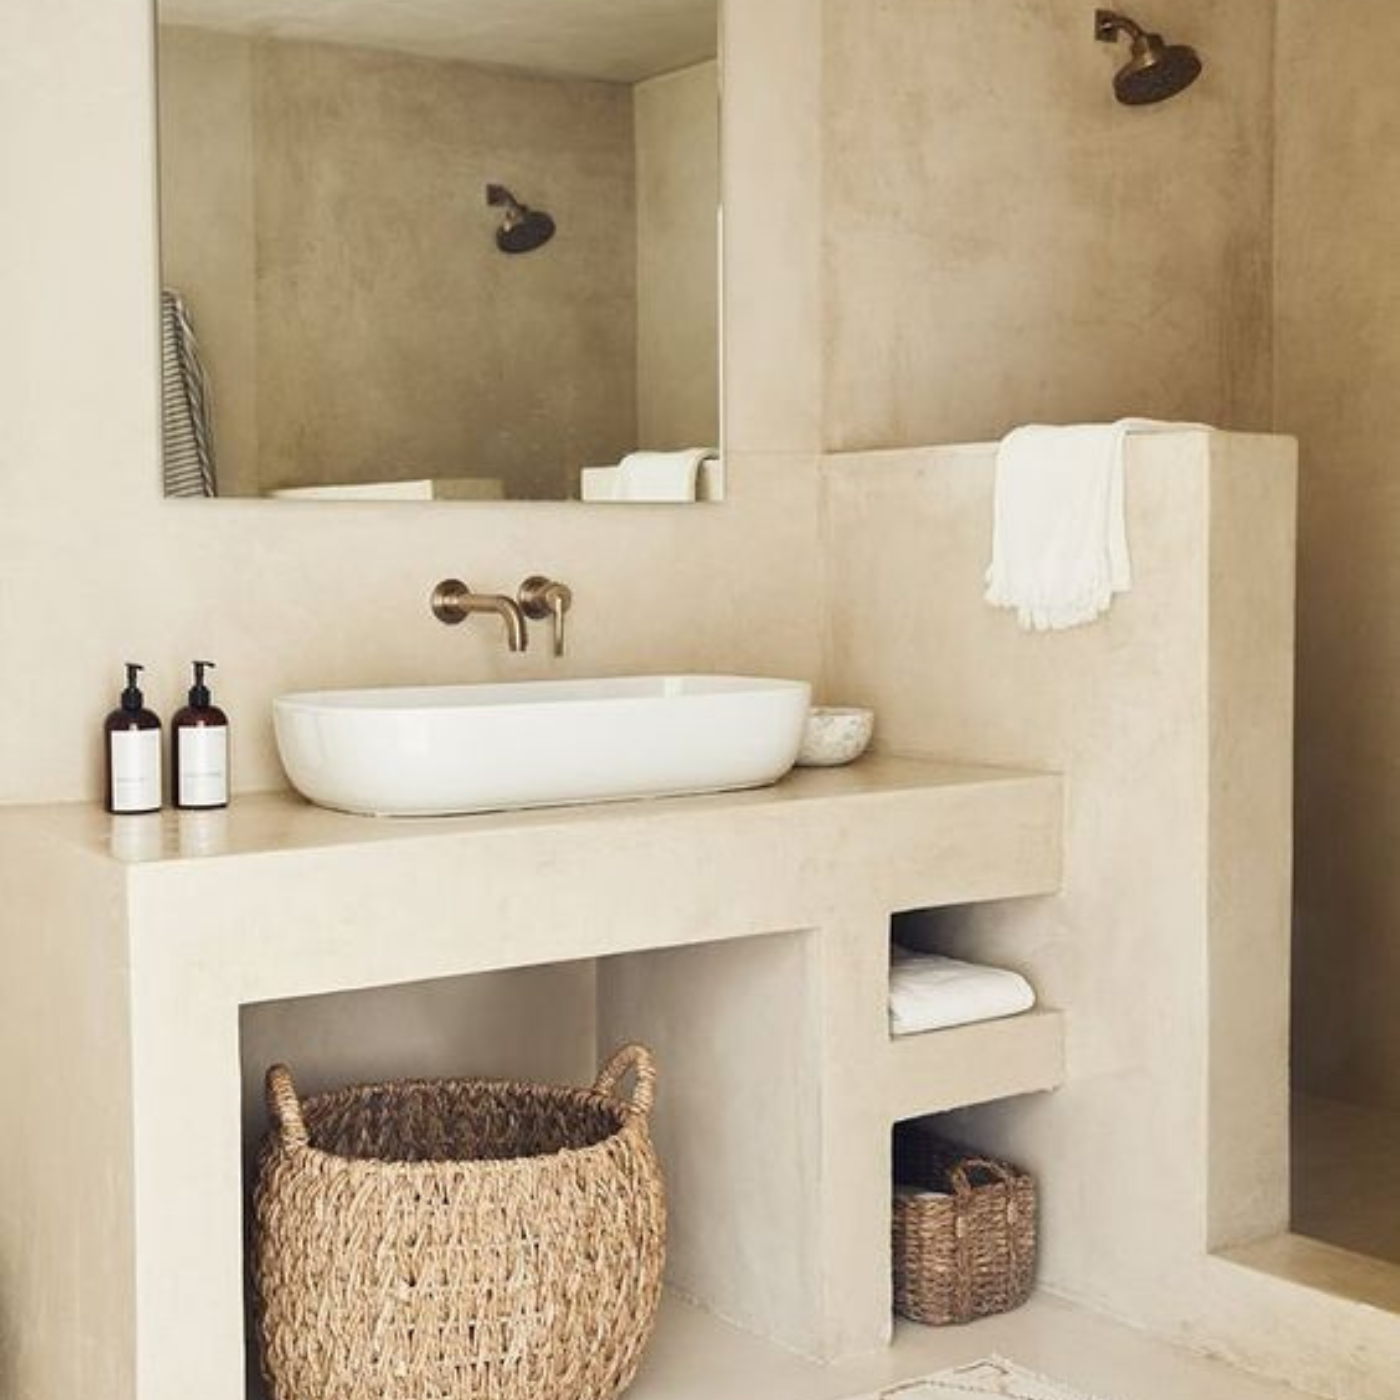 Tips to Create a Luxury Spa Like Bathroom